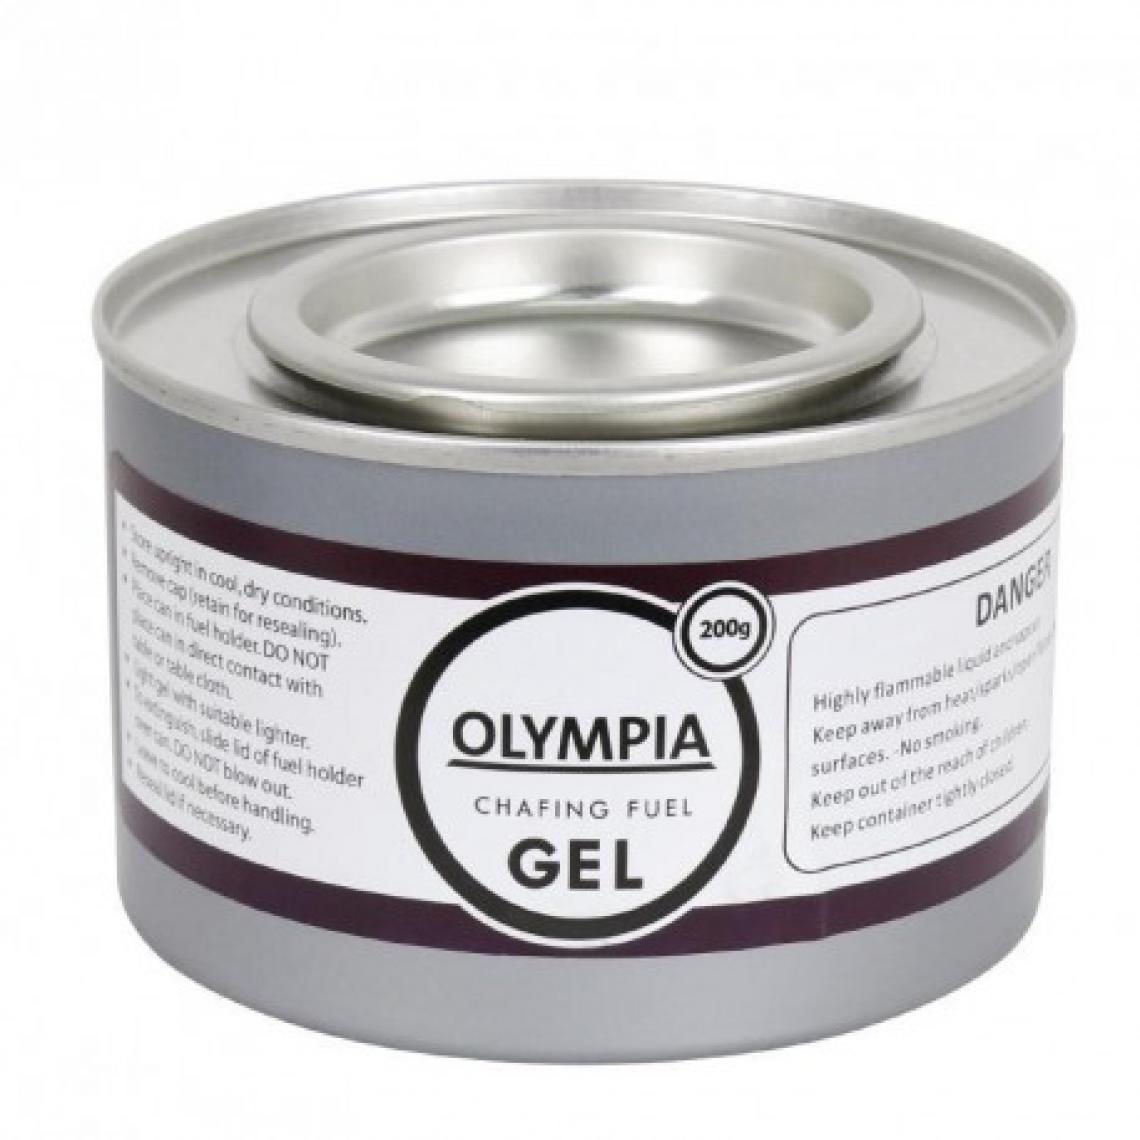 Olympia - Gel combustible pour chaffing Dish 2h - Lot de 12 capsules - Éthanol gel - Chauffage à pétrole / gaz